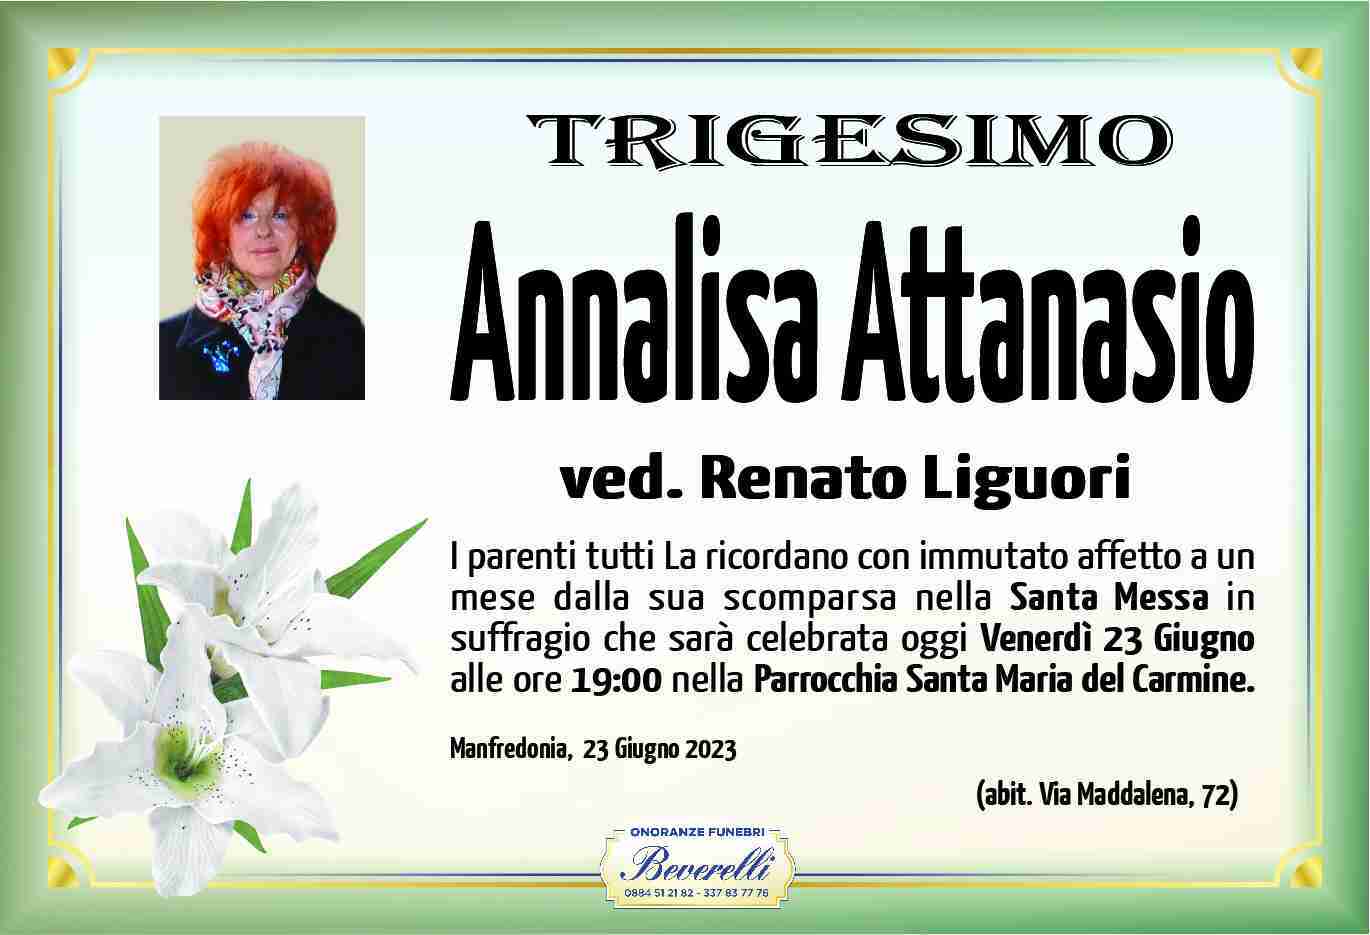 Annalisa Attanasio